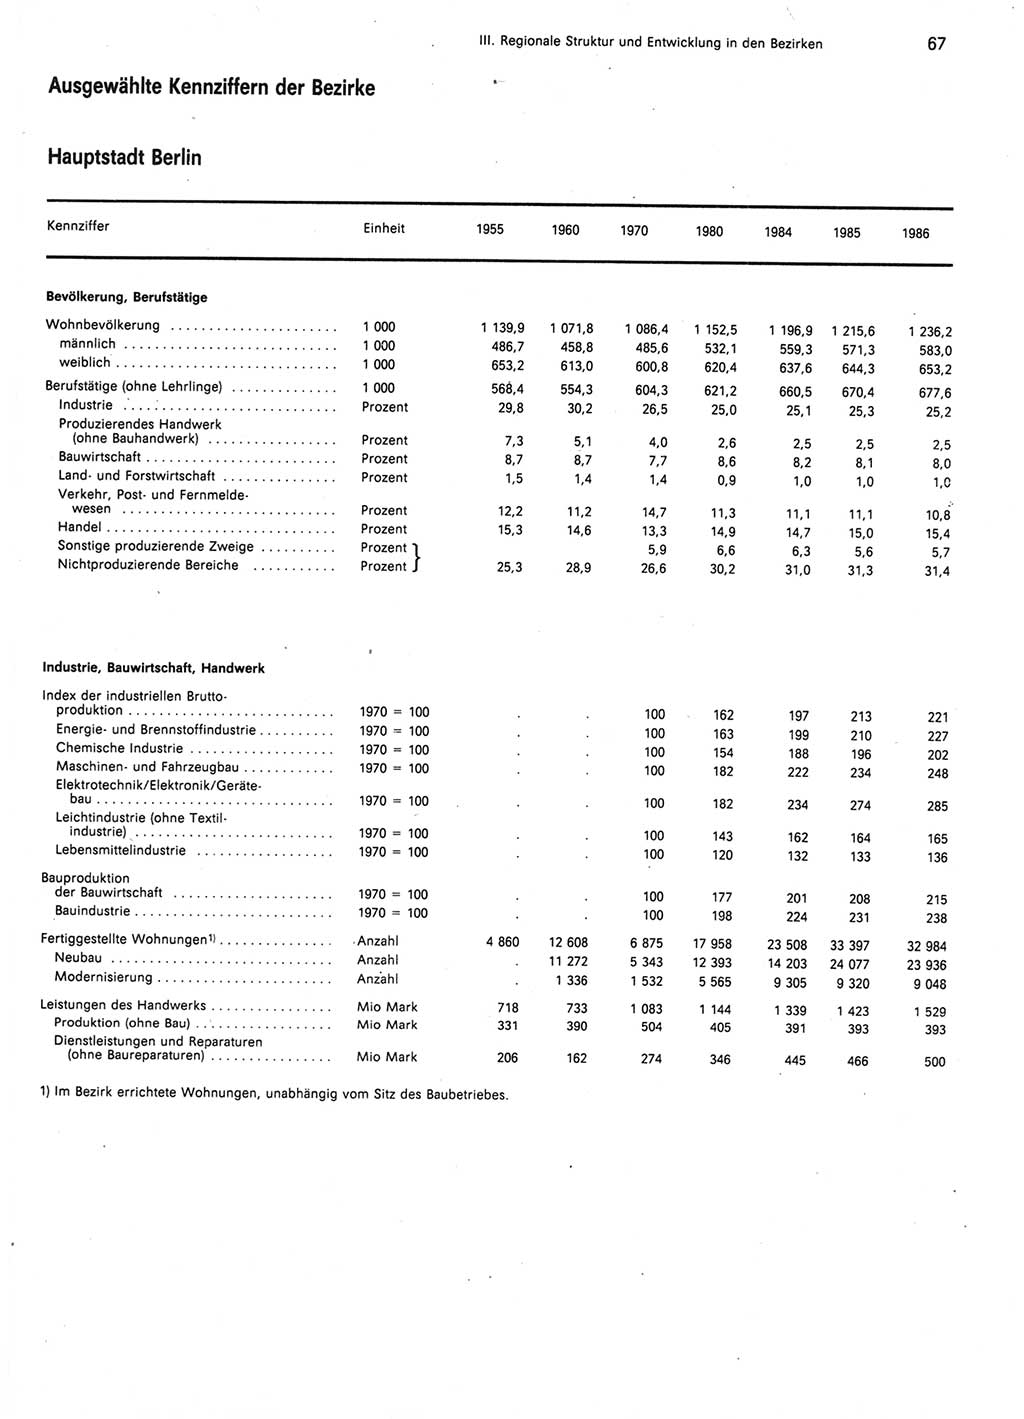 Statistisches Jahrbuch der Deutschen Demokratischen Republik (DDR) 1987, Seite 67 (Stat. Jb. DDR 1987, S. 67)